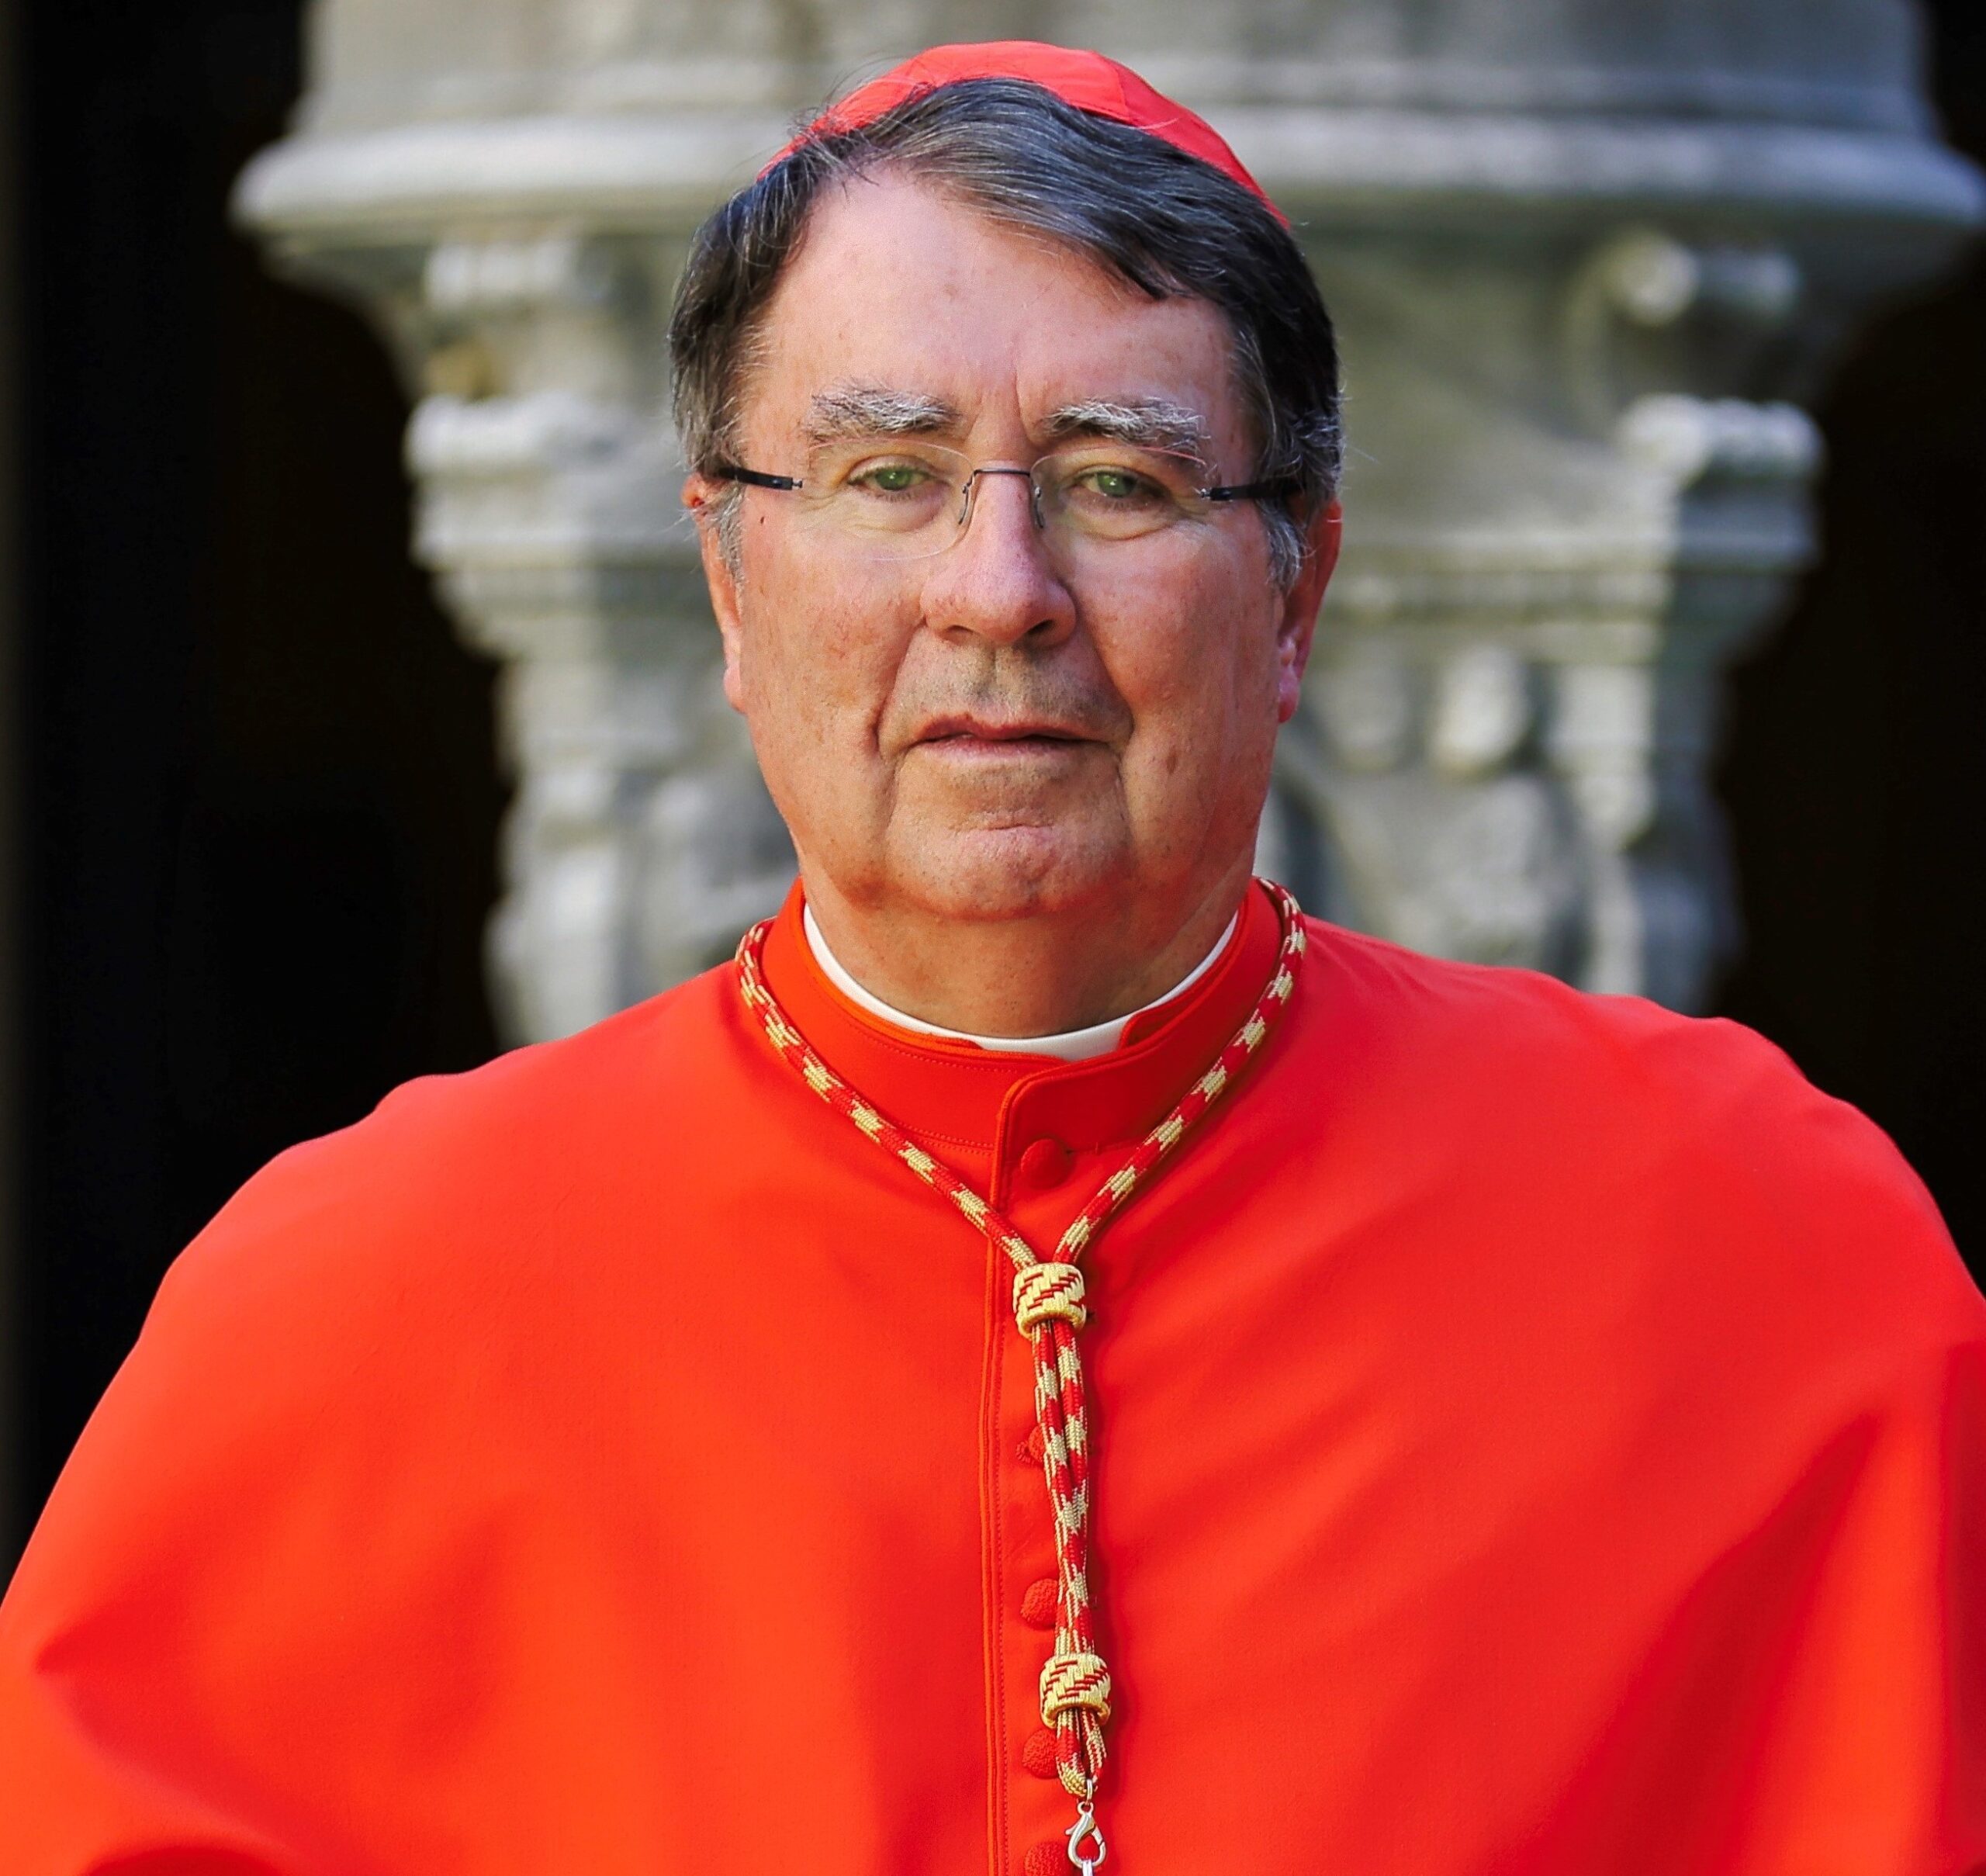 Cardinal Pierre copy